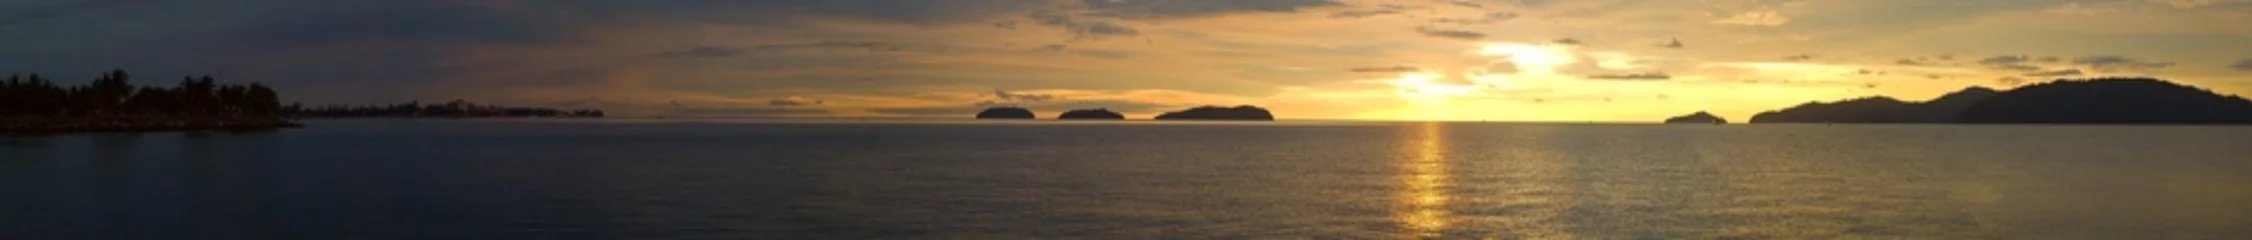 Küchenrückwand glas motiv Meer / Ozean Ein ultraweiter Panoramablick auf einen goldenen Sonnenuntergangsozean